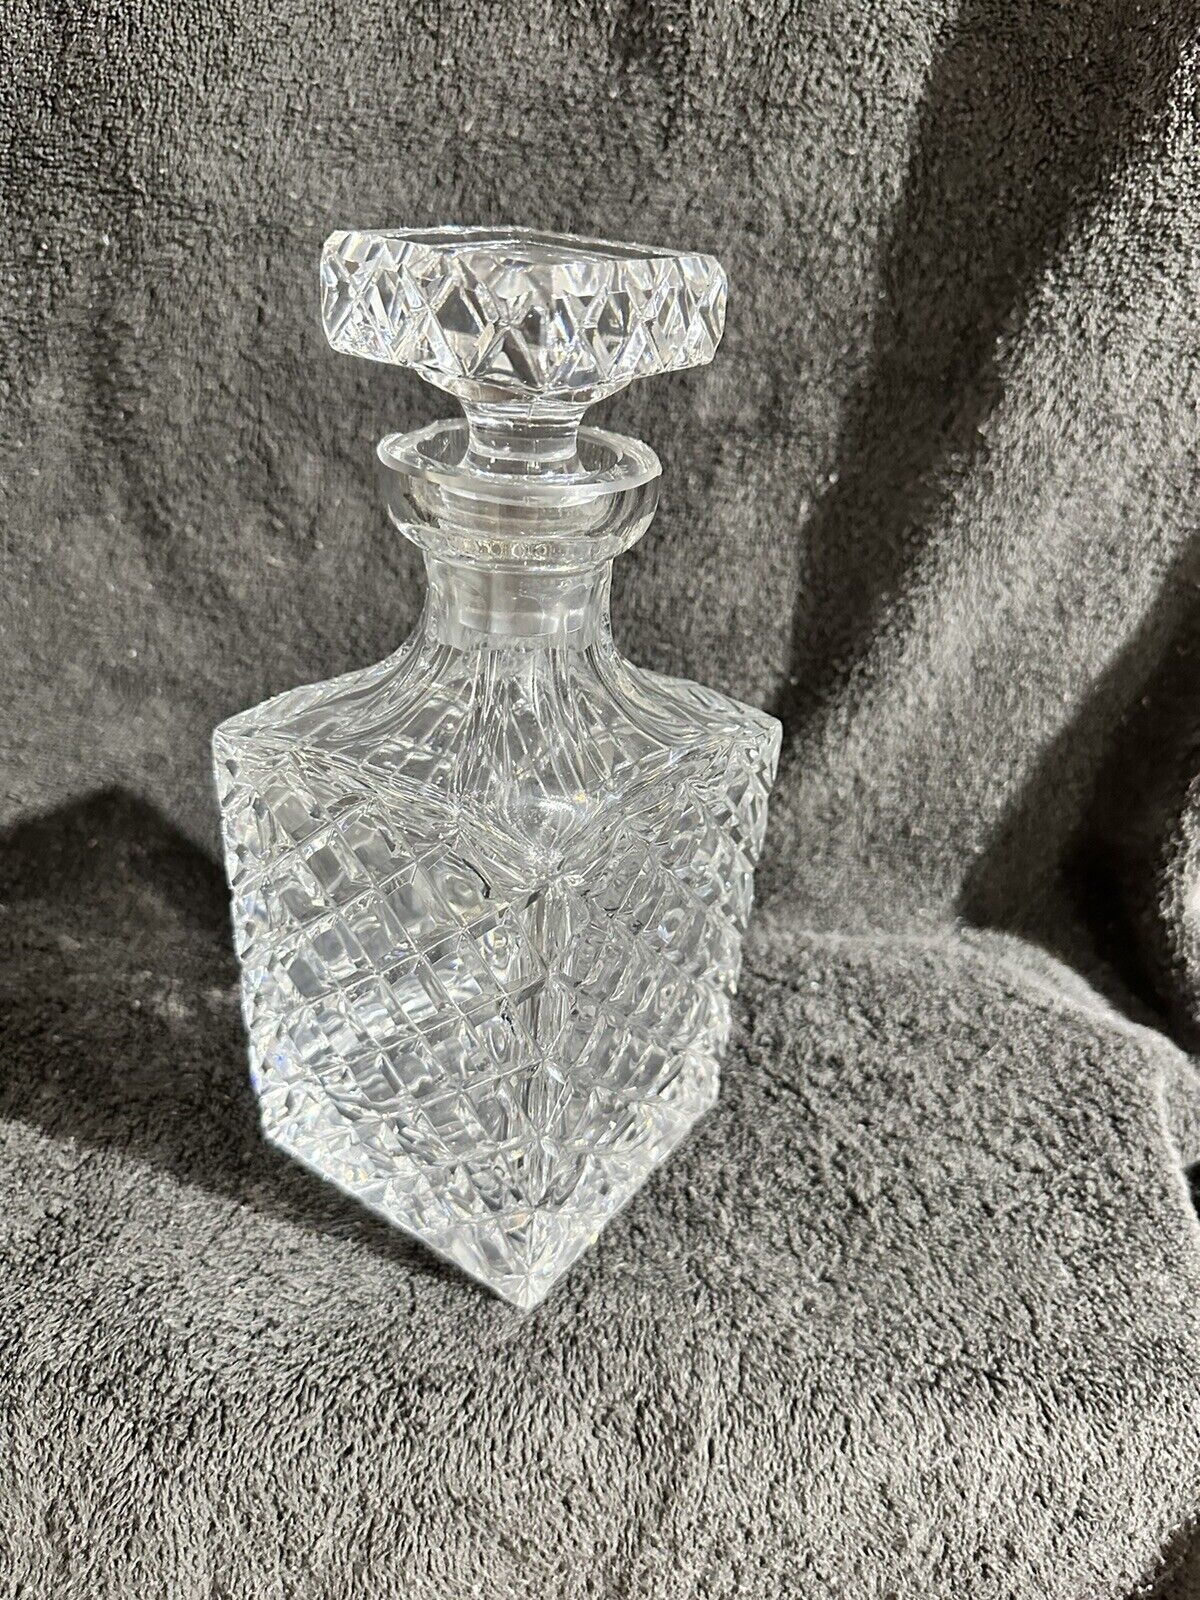 Vtg Heavy Glass Crystal Decanter Square Stopper Liquor Bottle Diamond Pattern